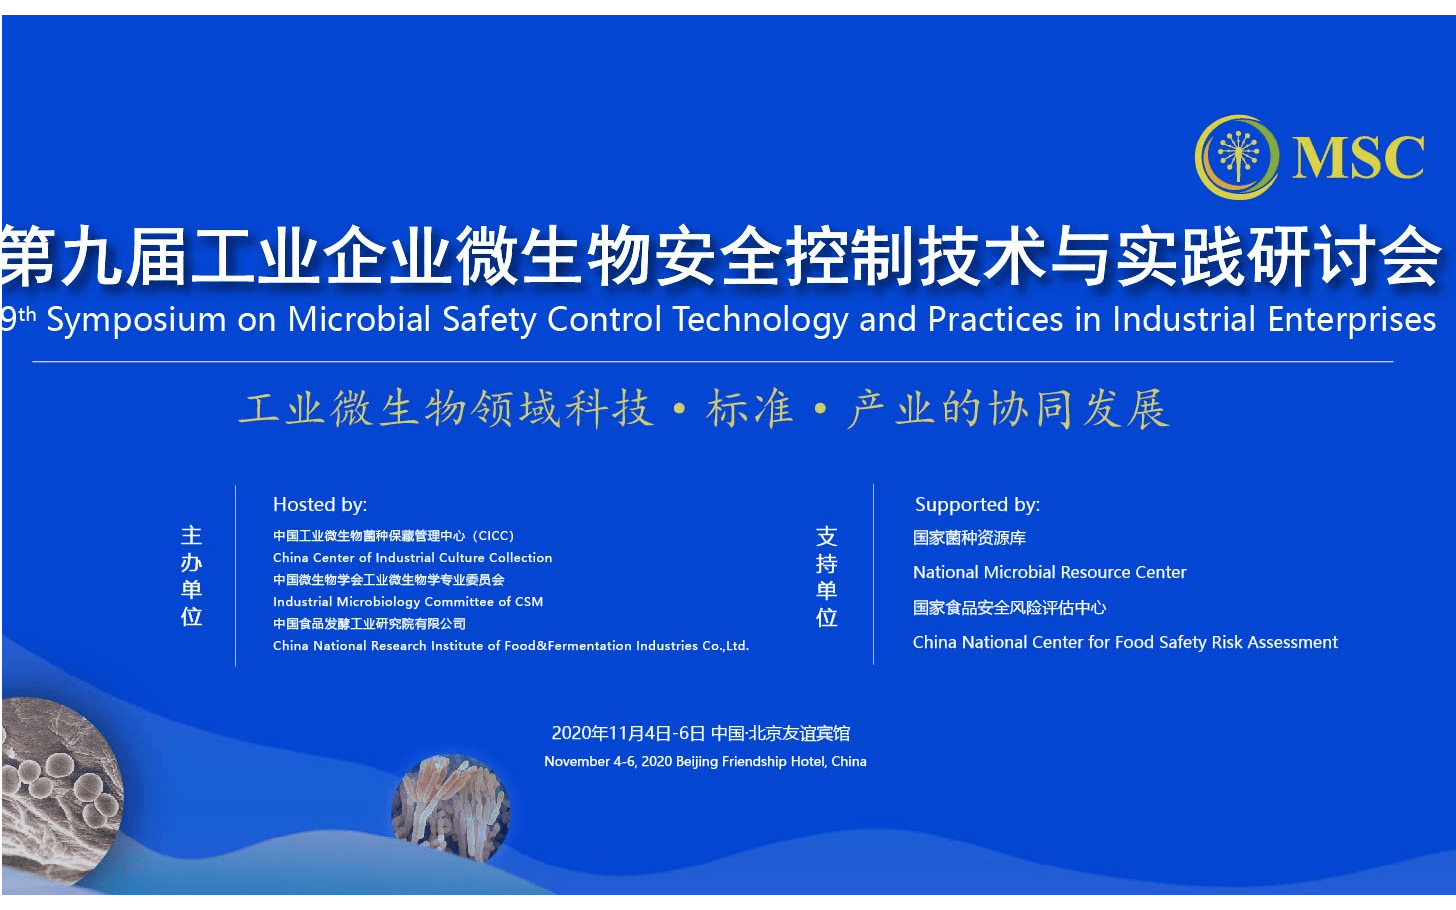 第九届工业企业微生物安全控制与技术研讨会